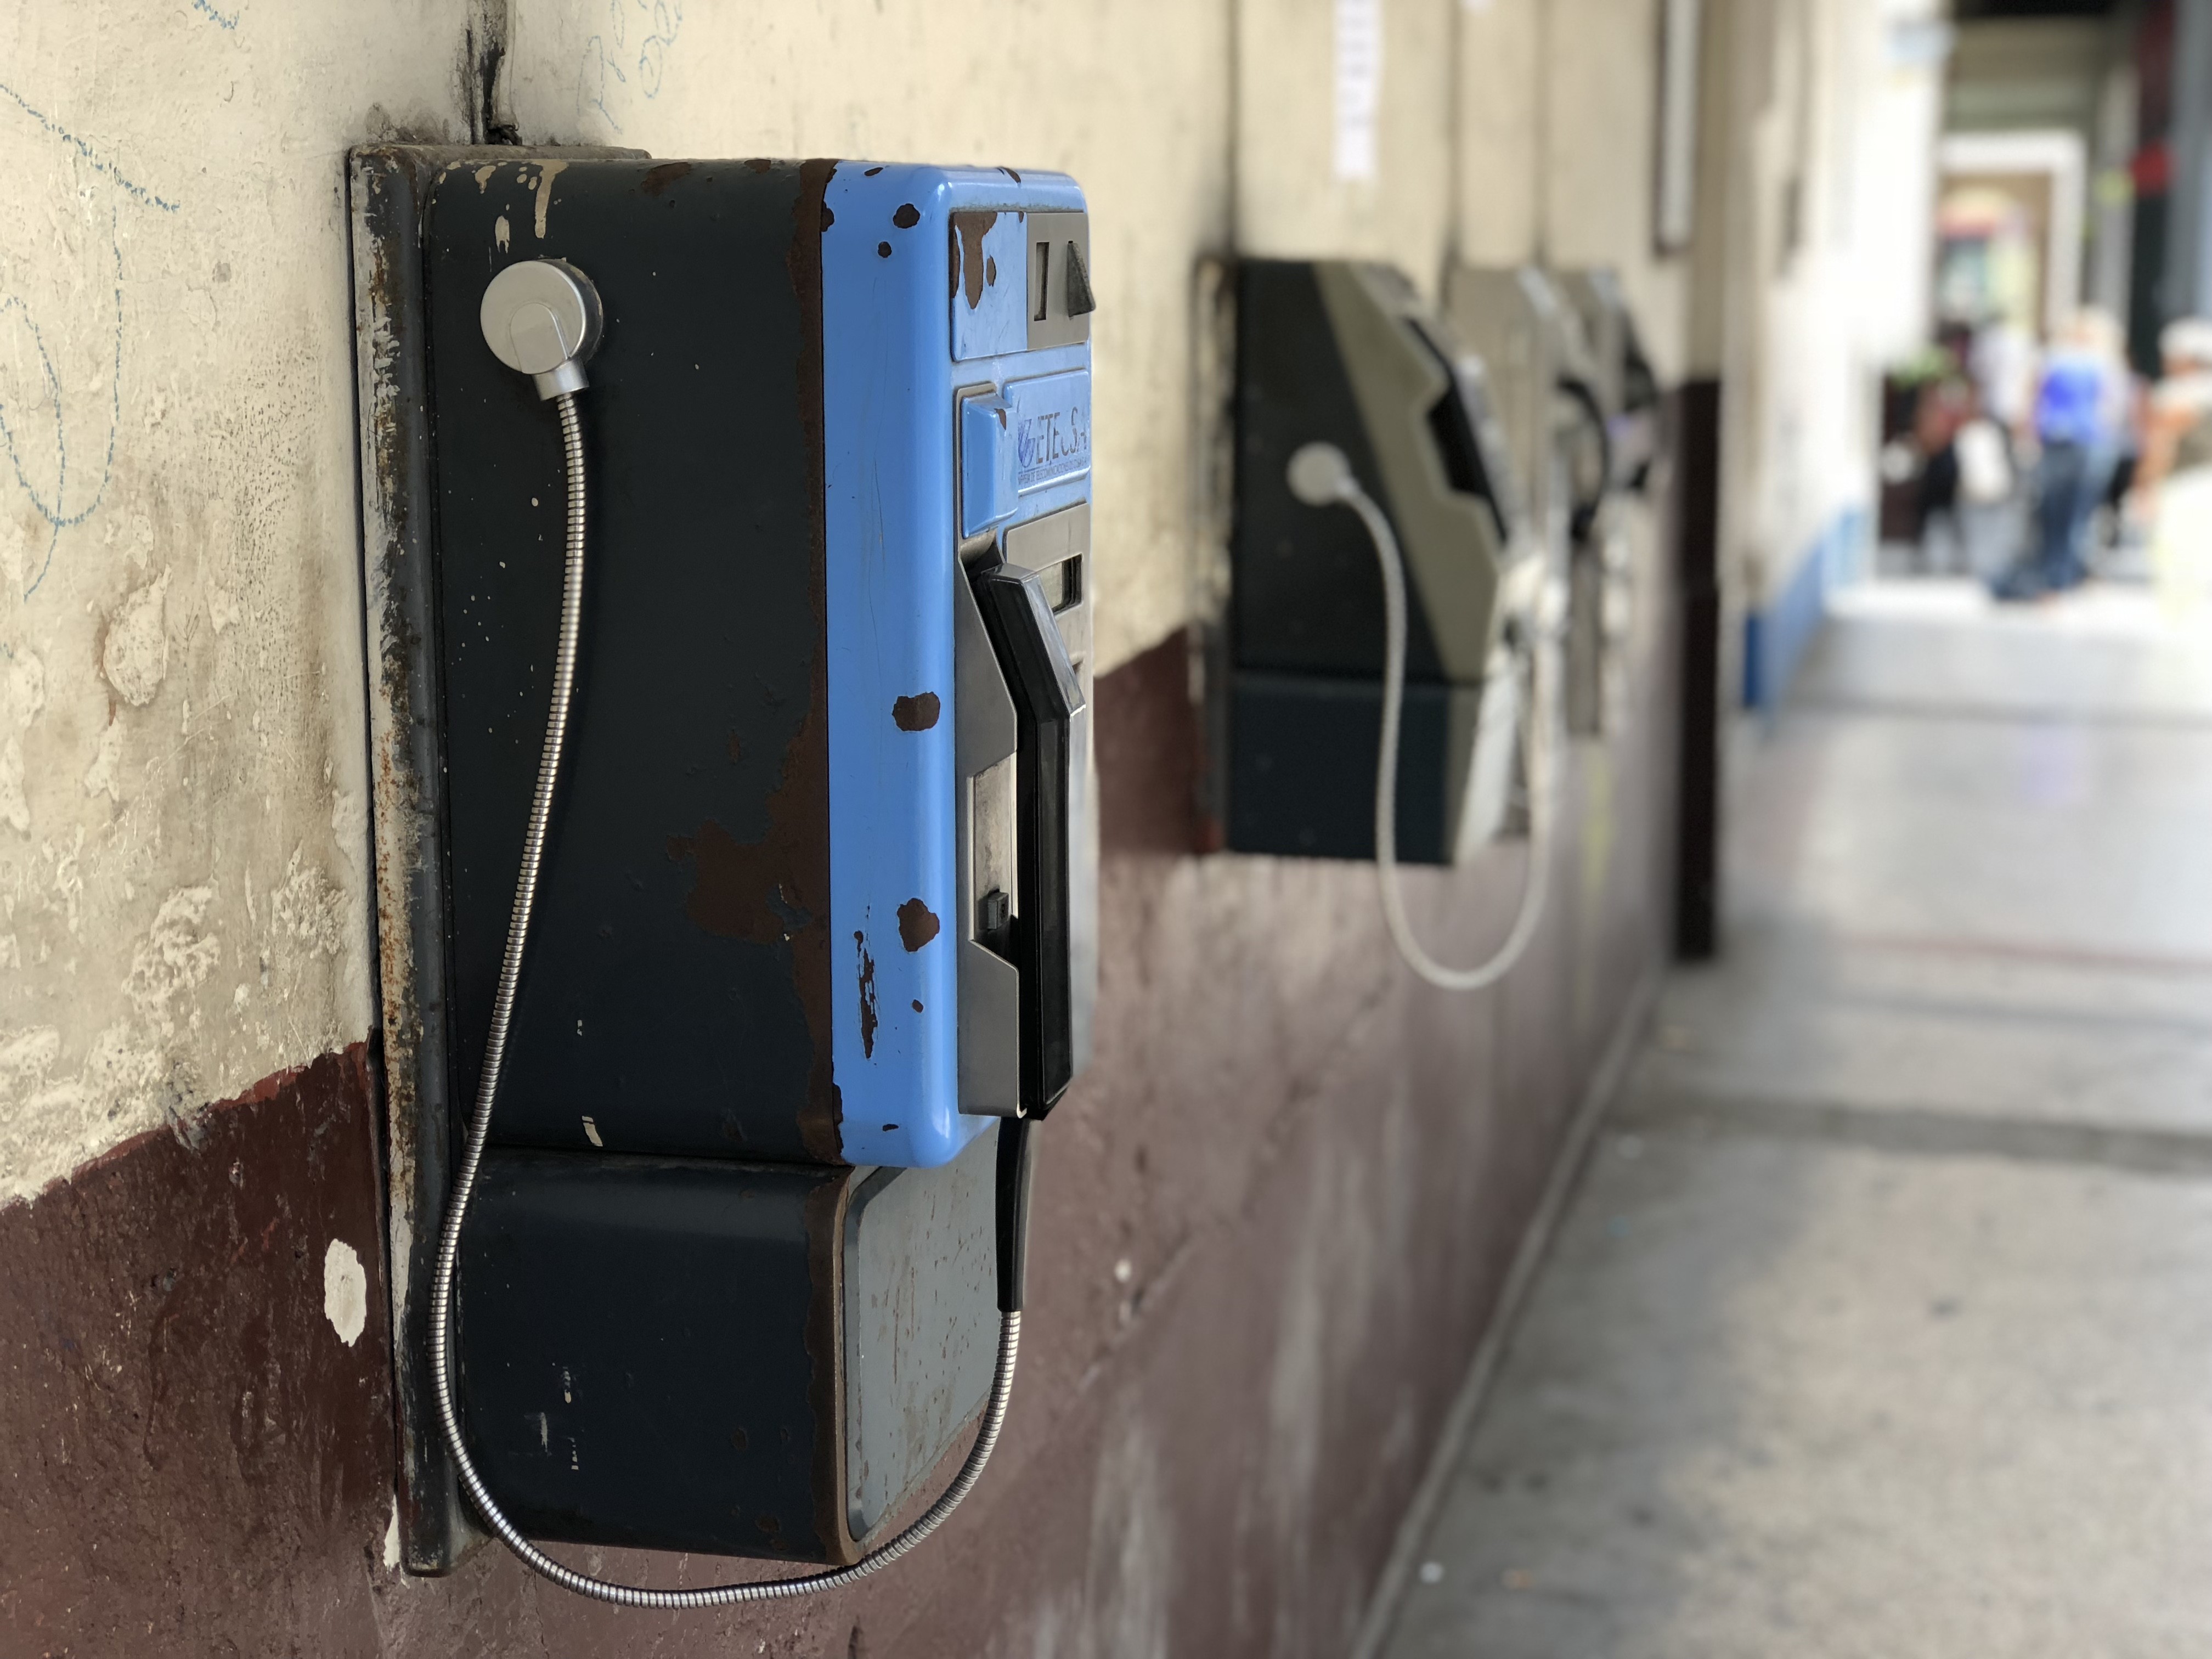 Varios teléfonos públicos en una pared de un porta en Cuba.